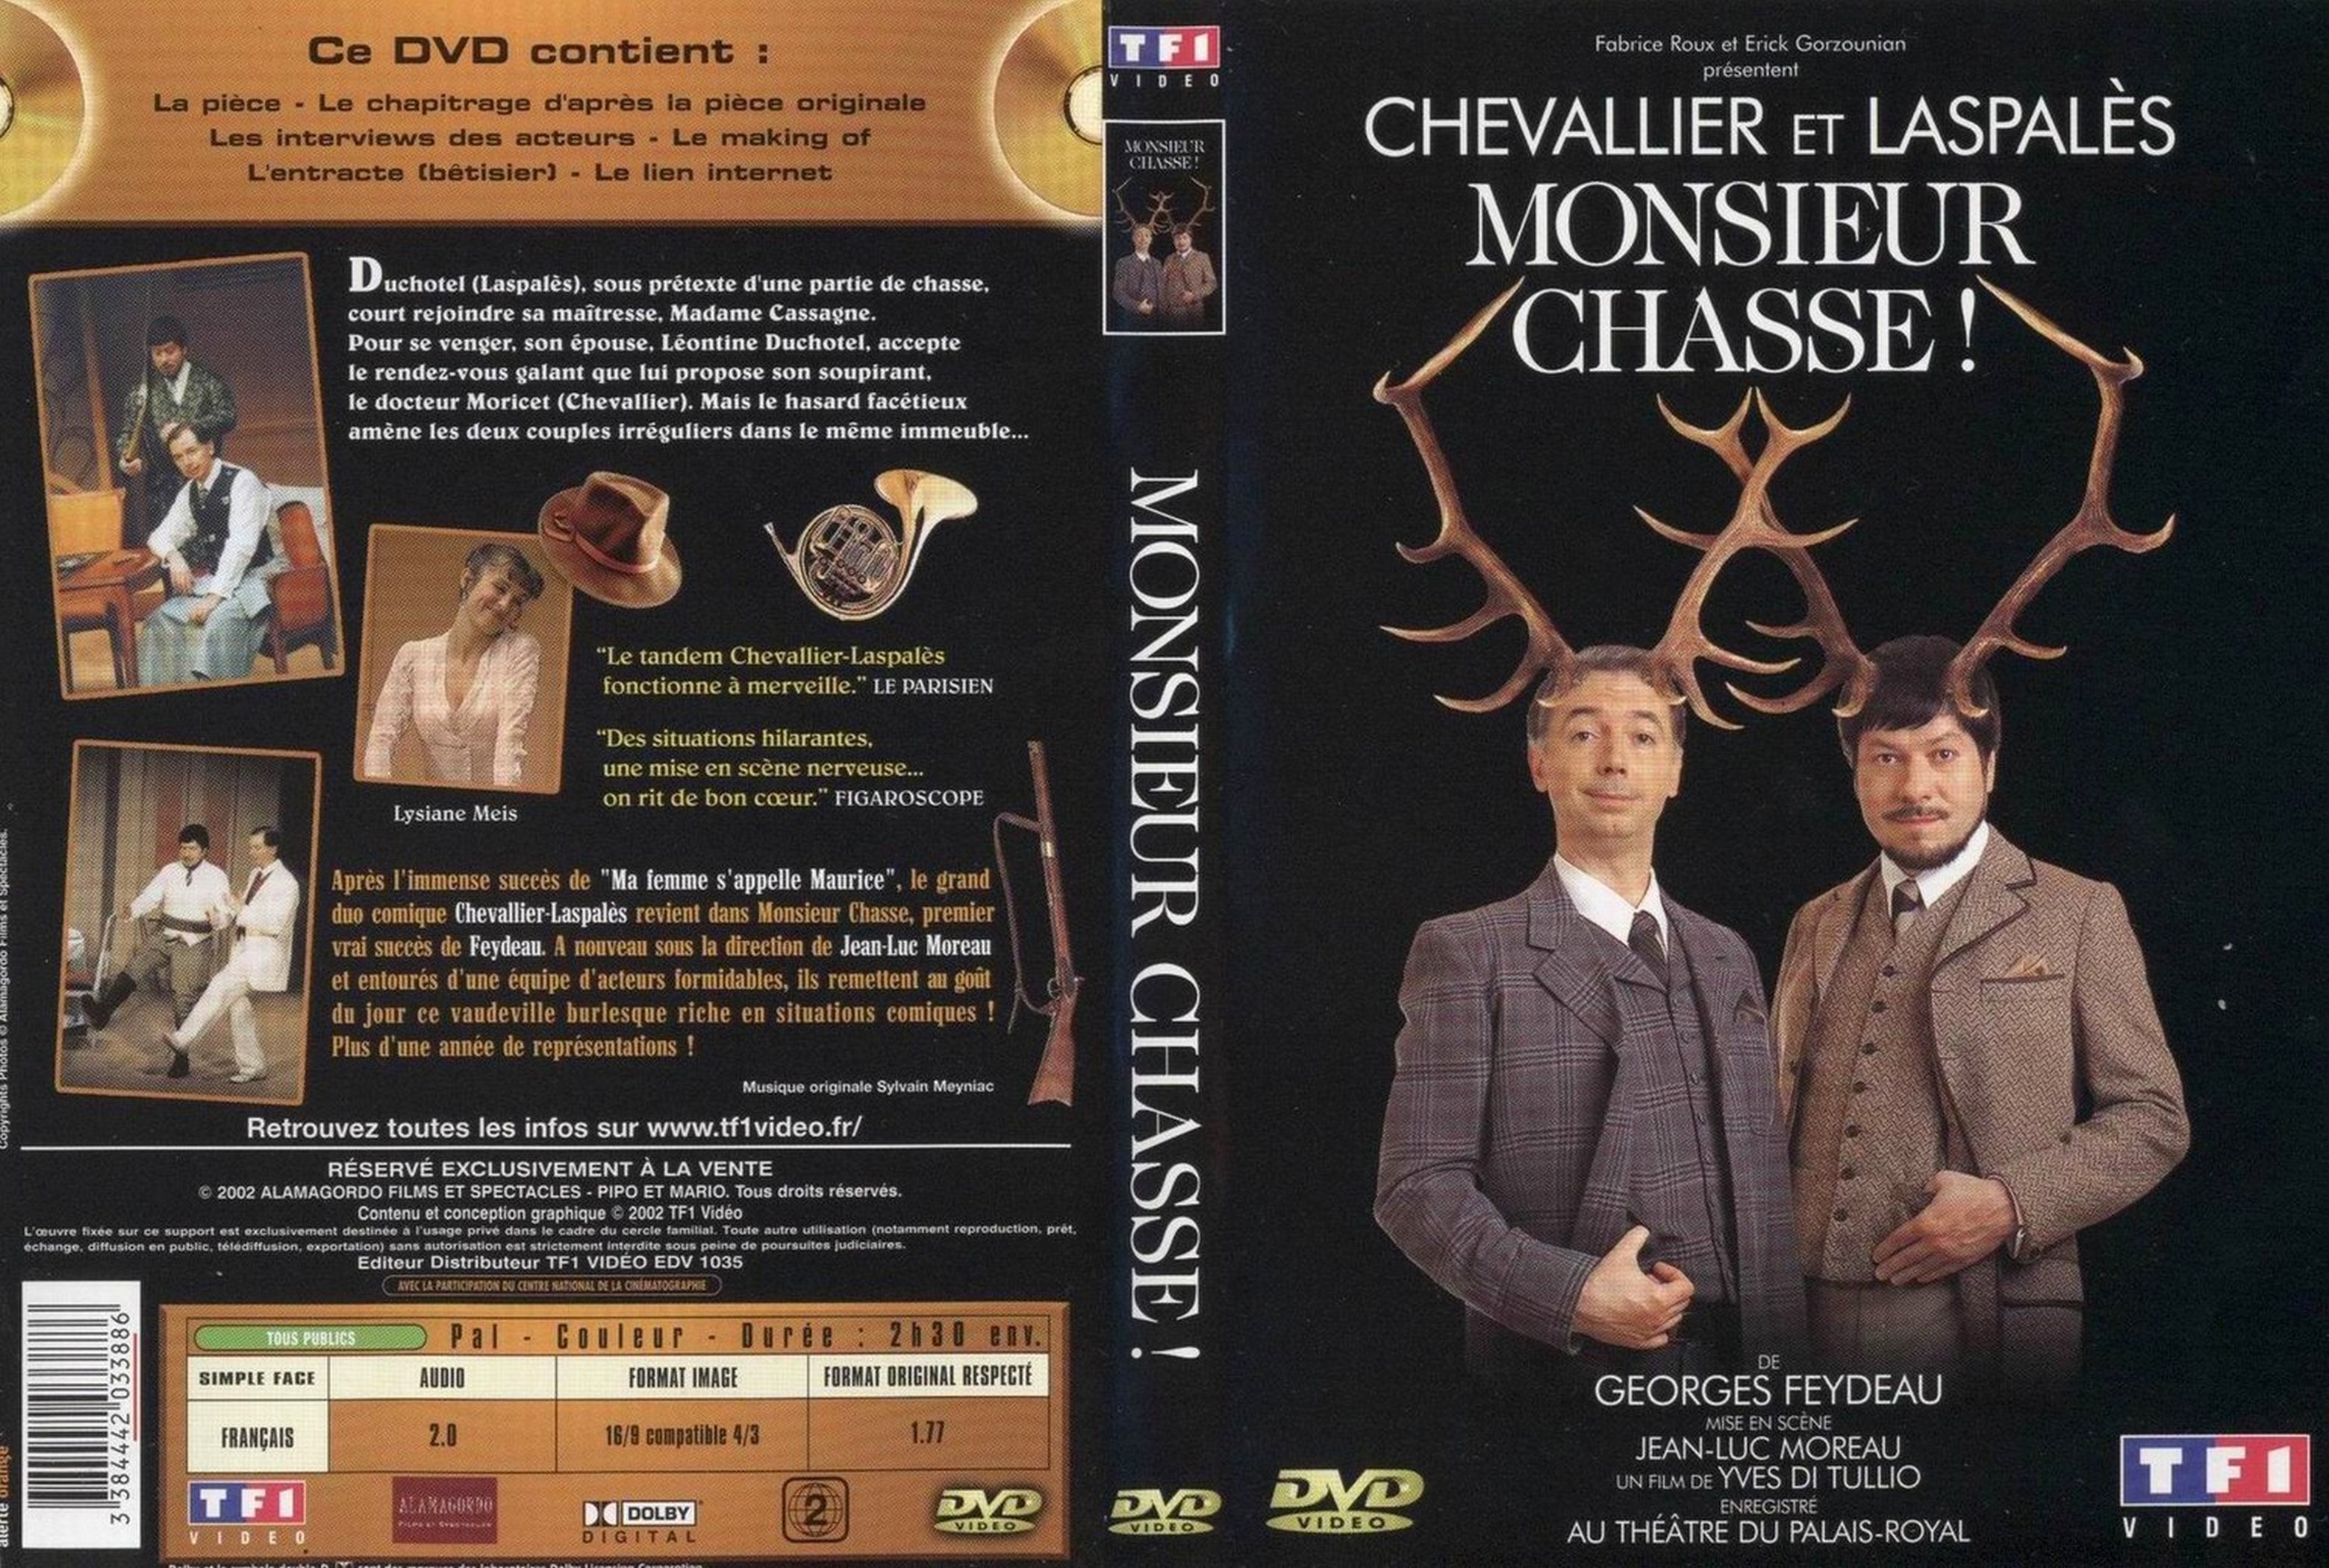 Jaquette DVD Chevalier et Laspales monsieur chasse